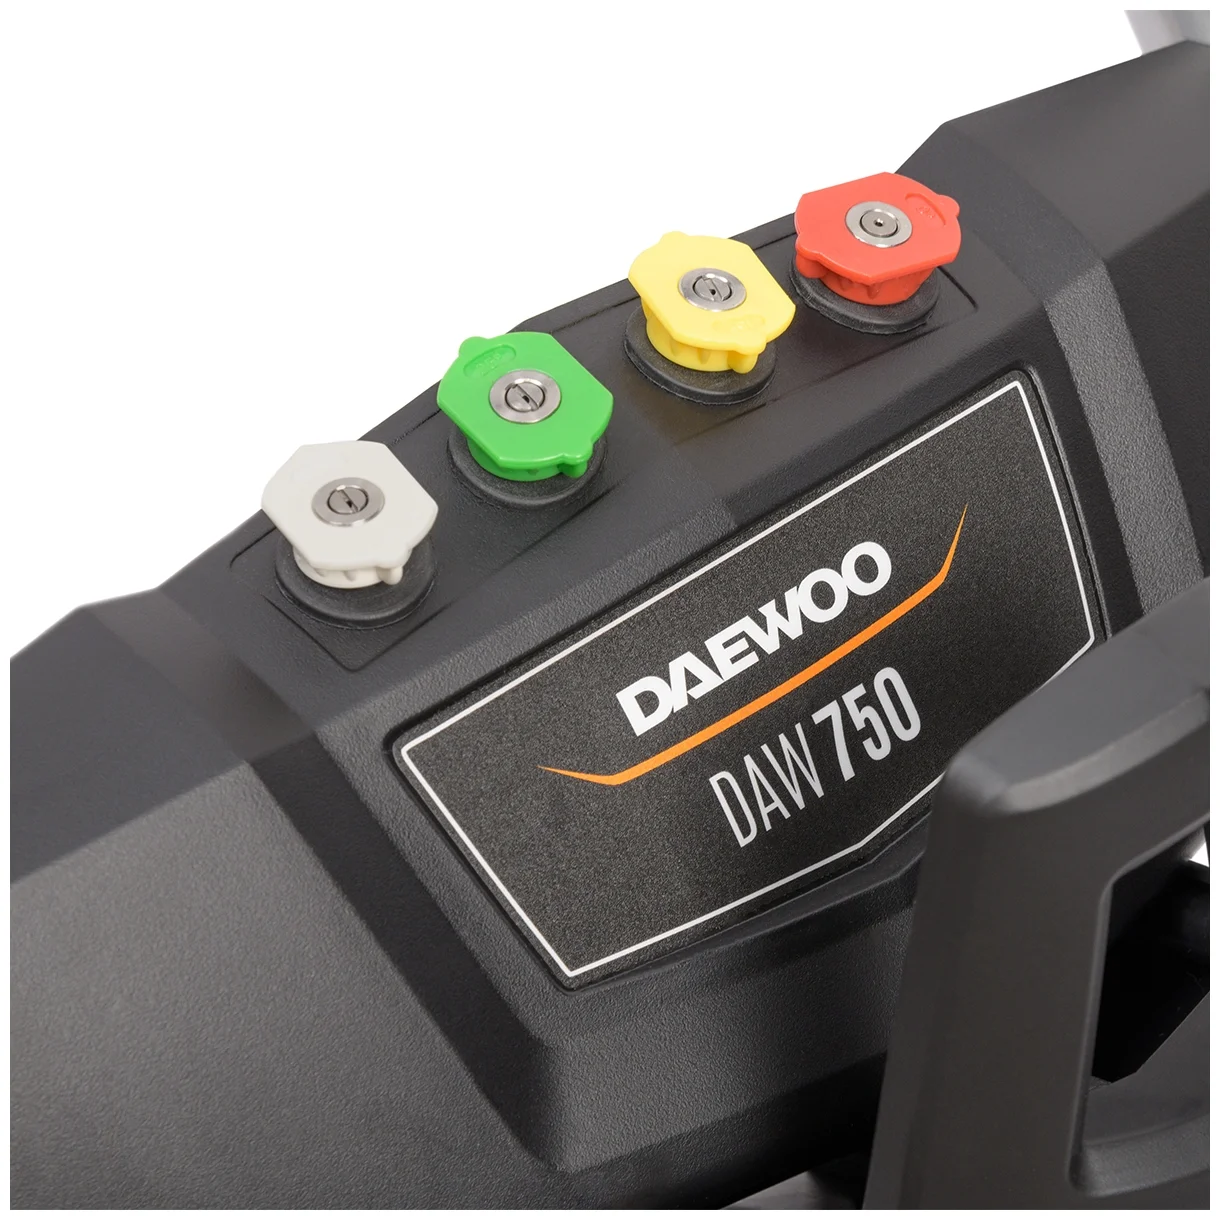 Daewoo Power Products DAW-750, 210 бар - вес 27.5 кг